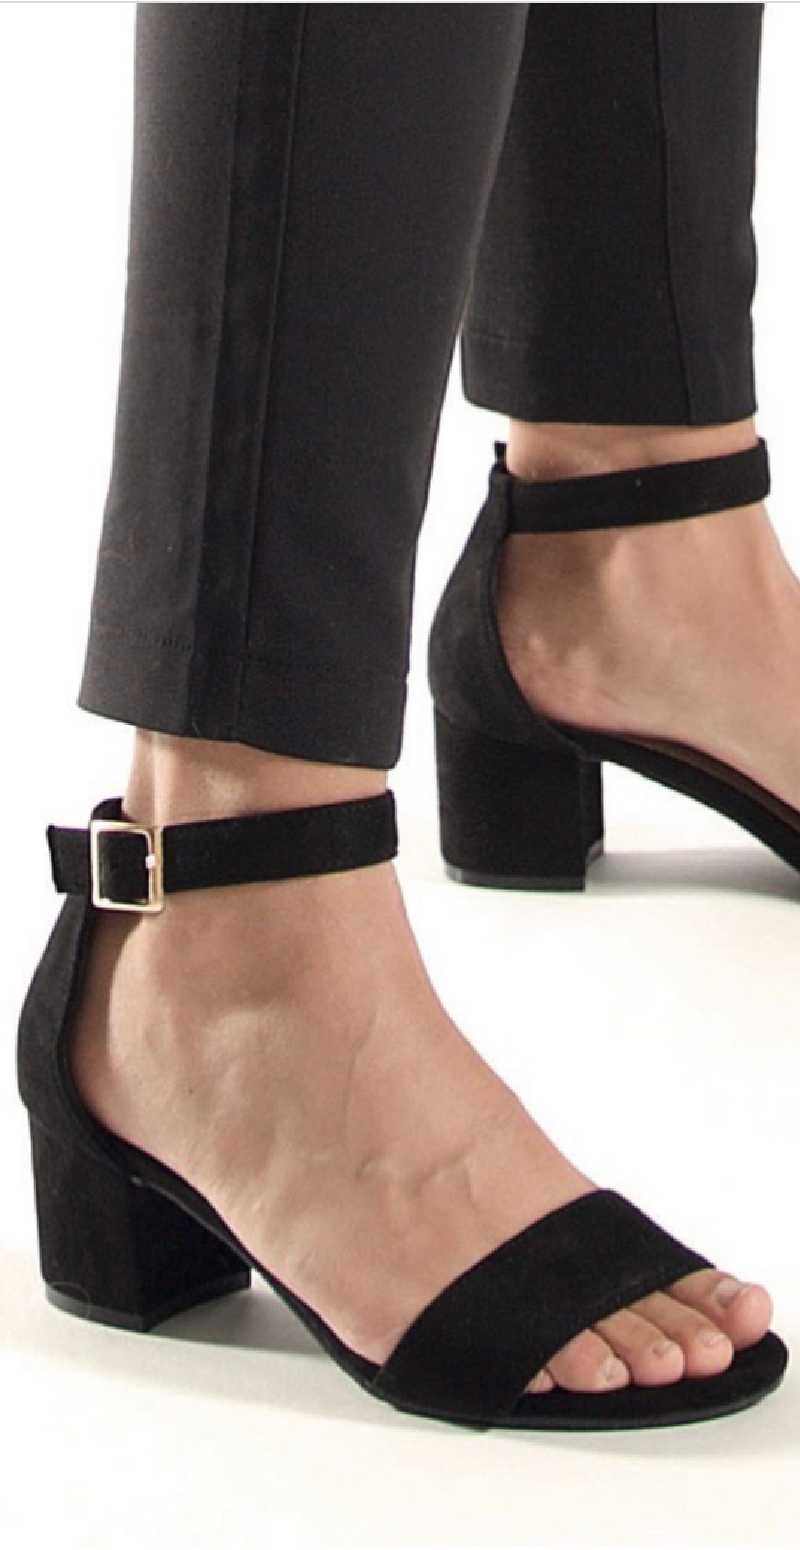 Sandal med blokhæl i sort